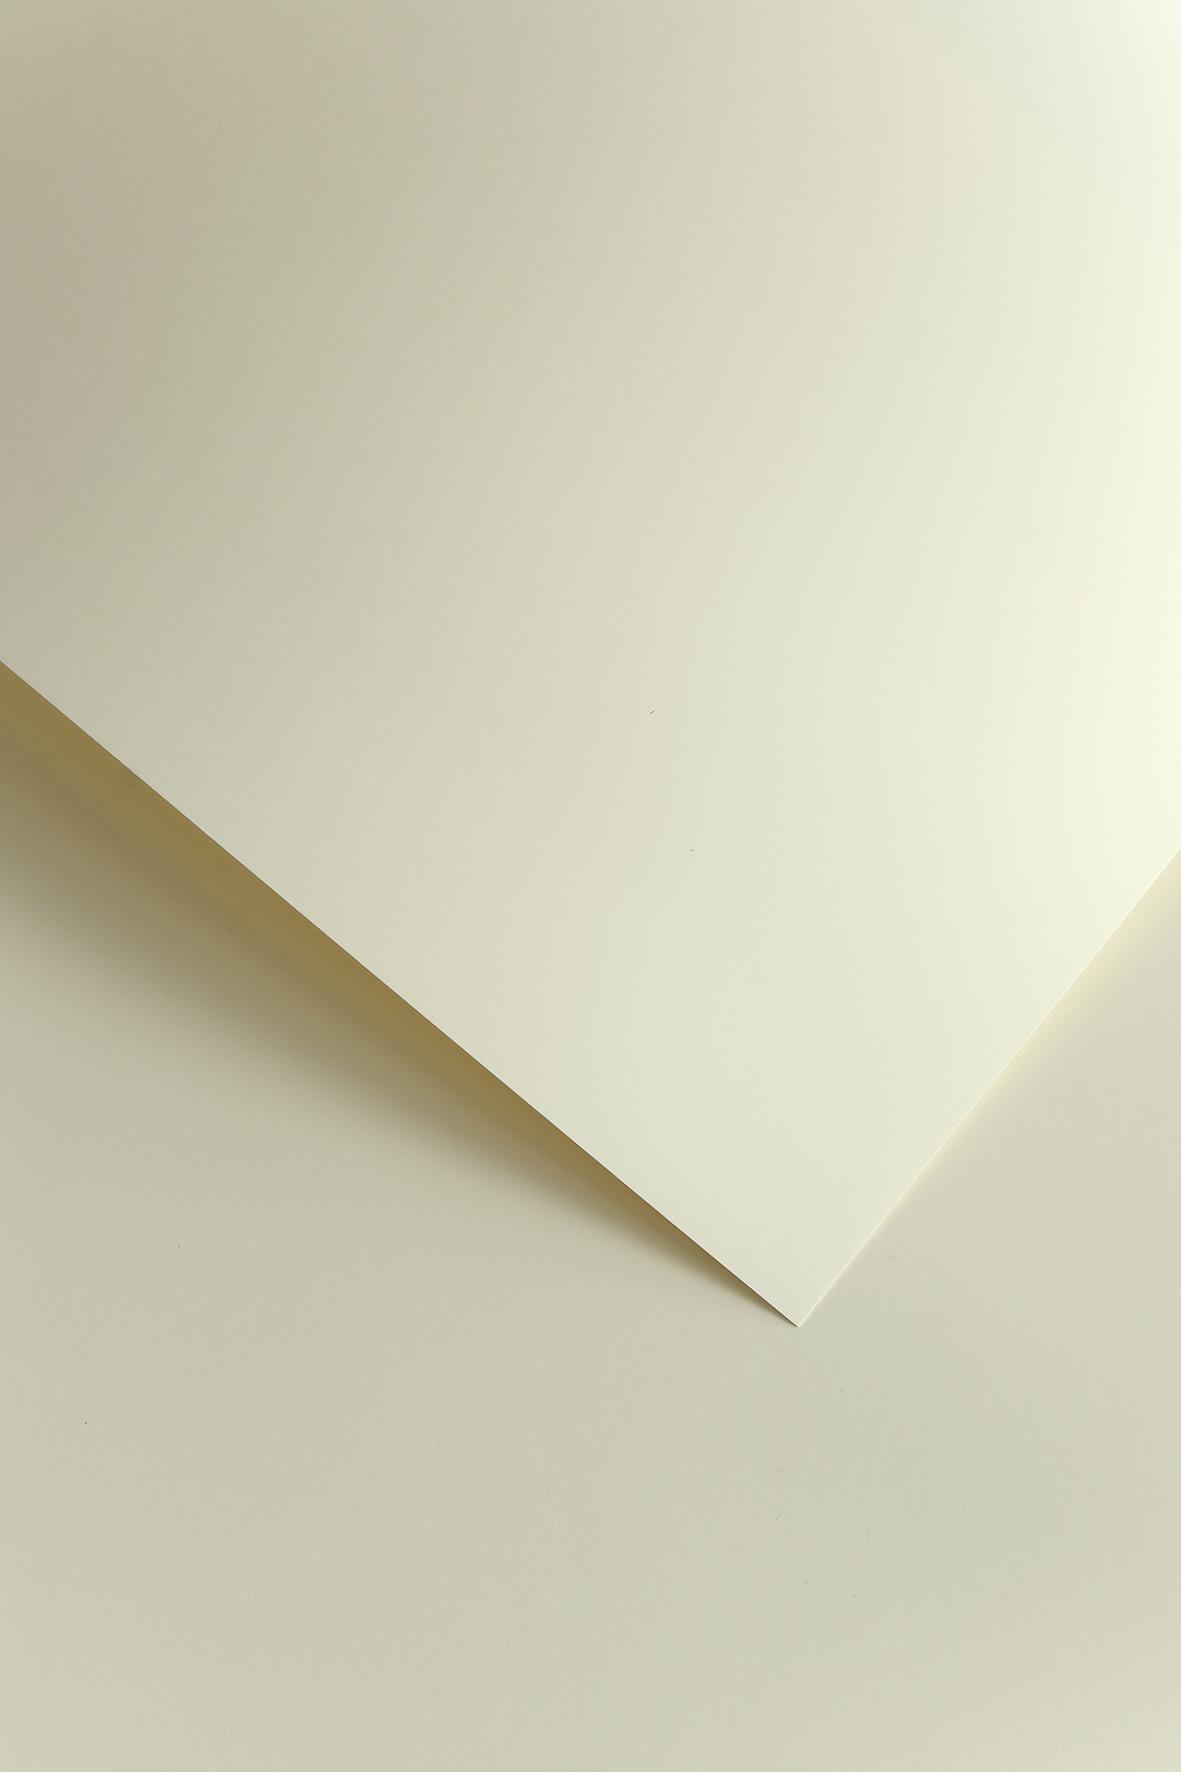 Galeria Papieru ozdobný papír Hladký ivory 250g, 20ks